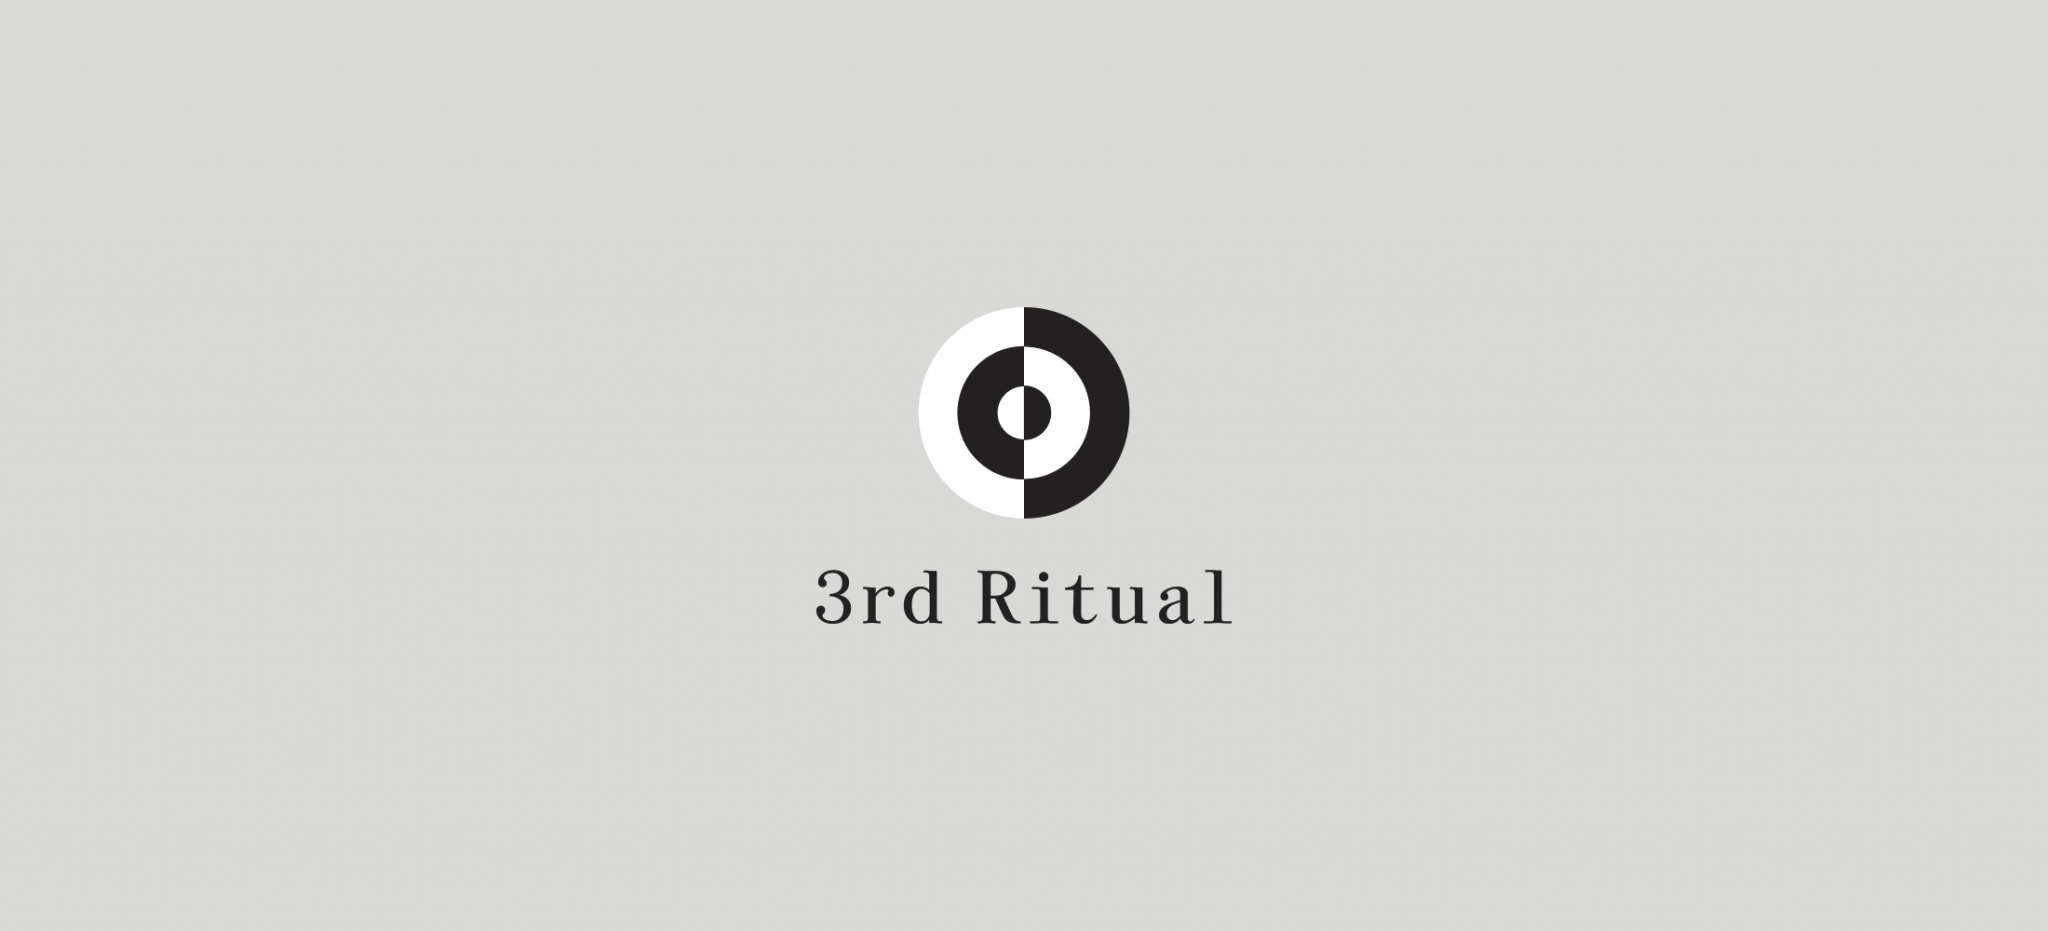 3rd ritual logo